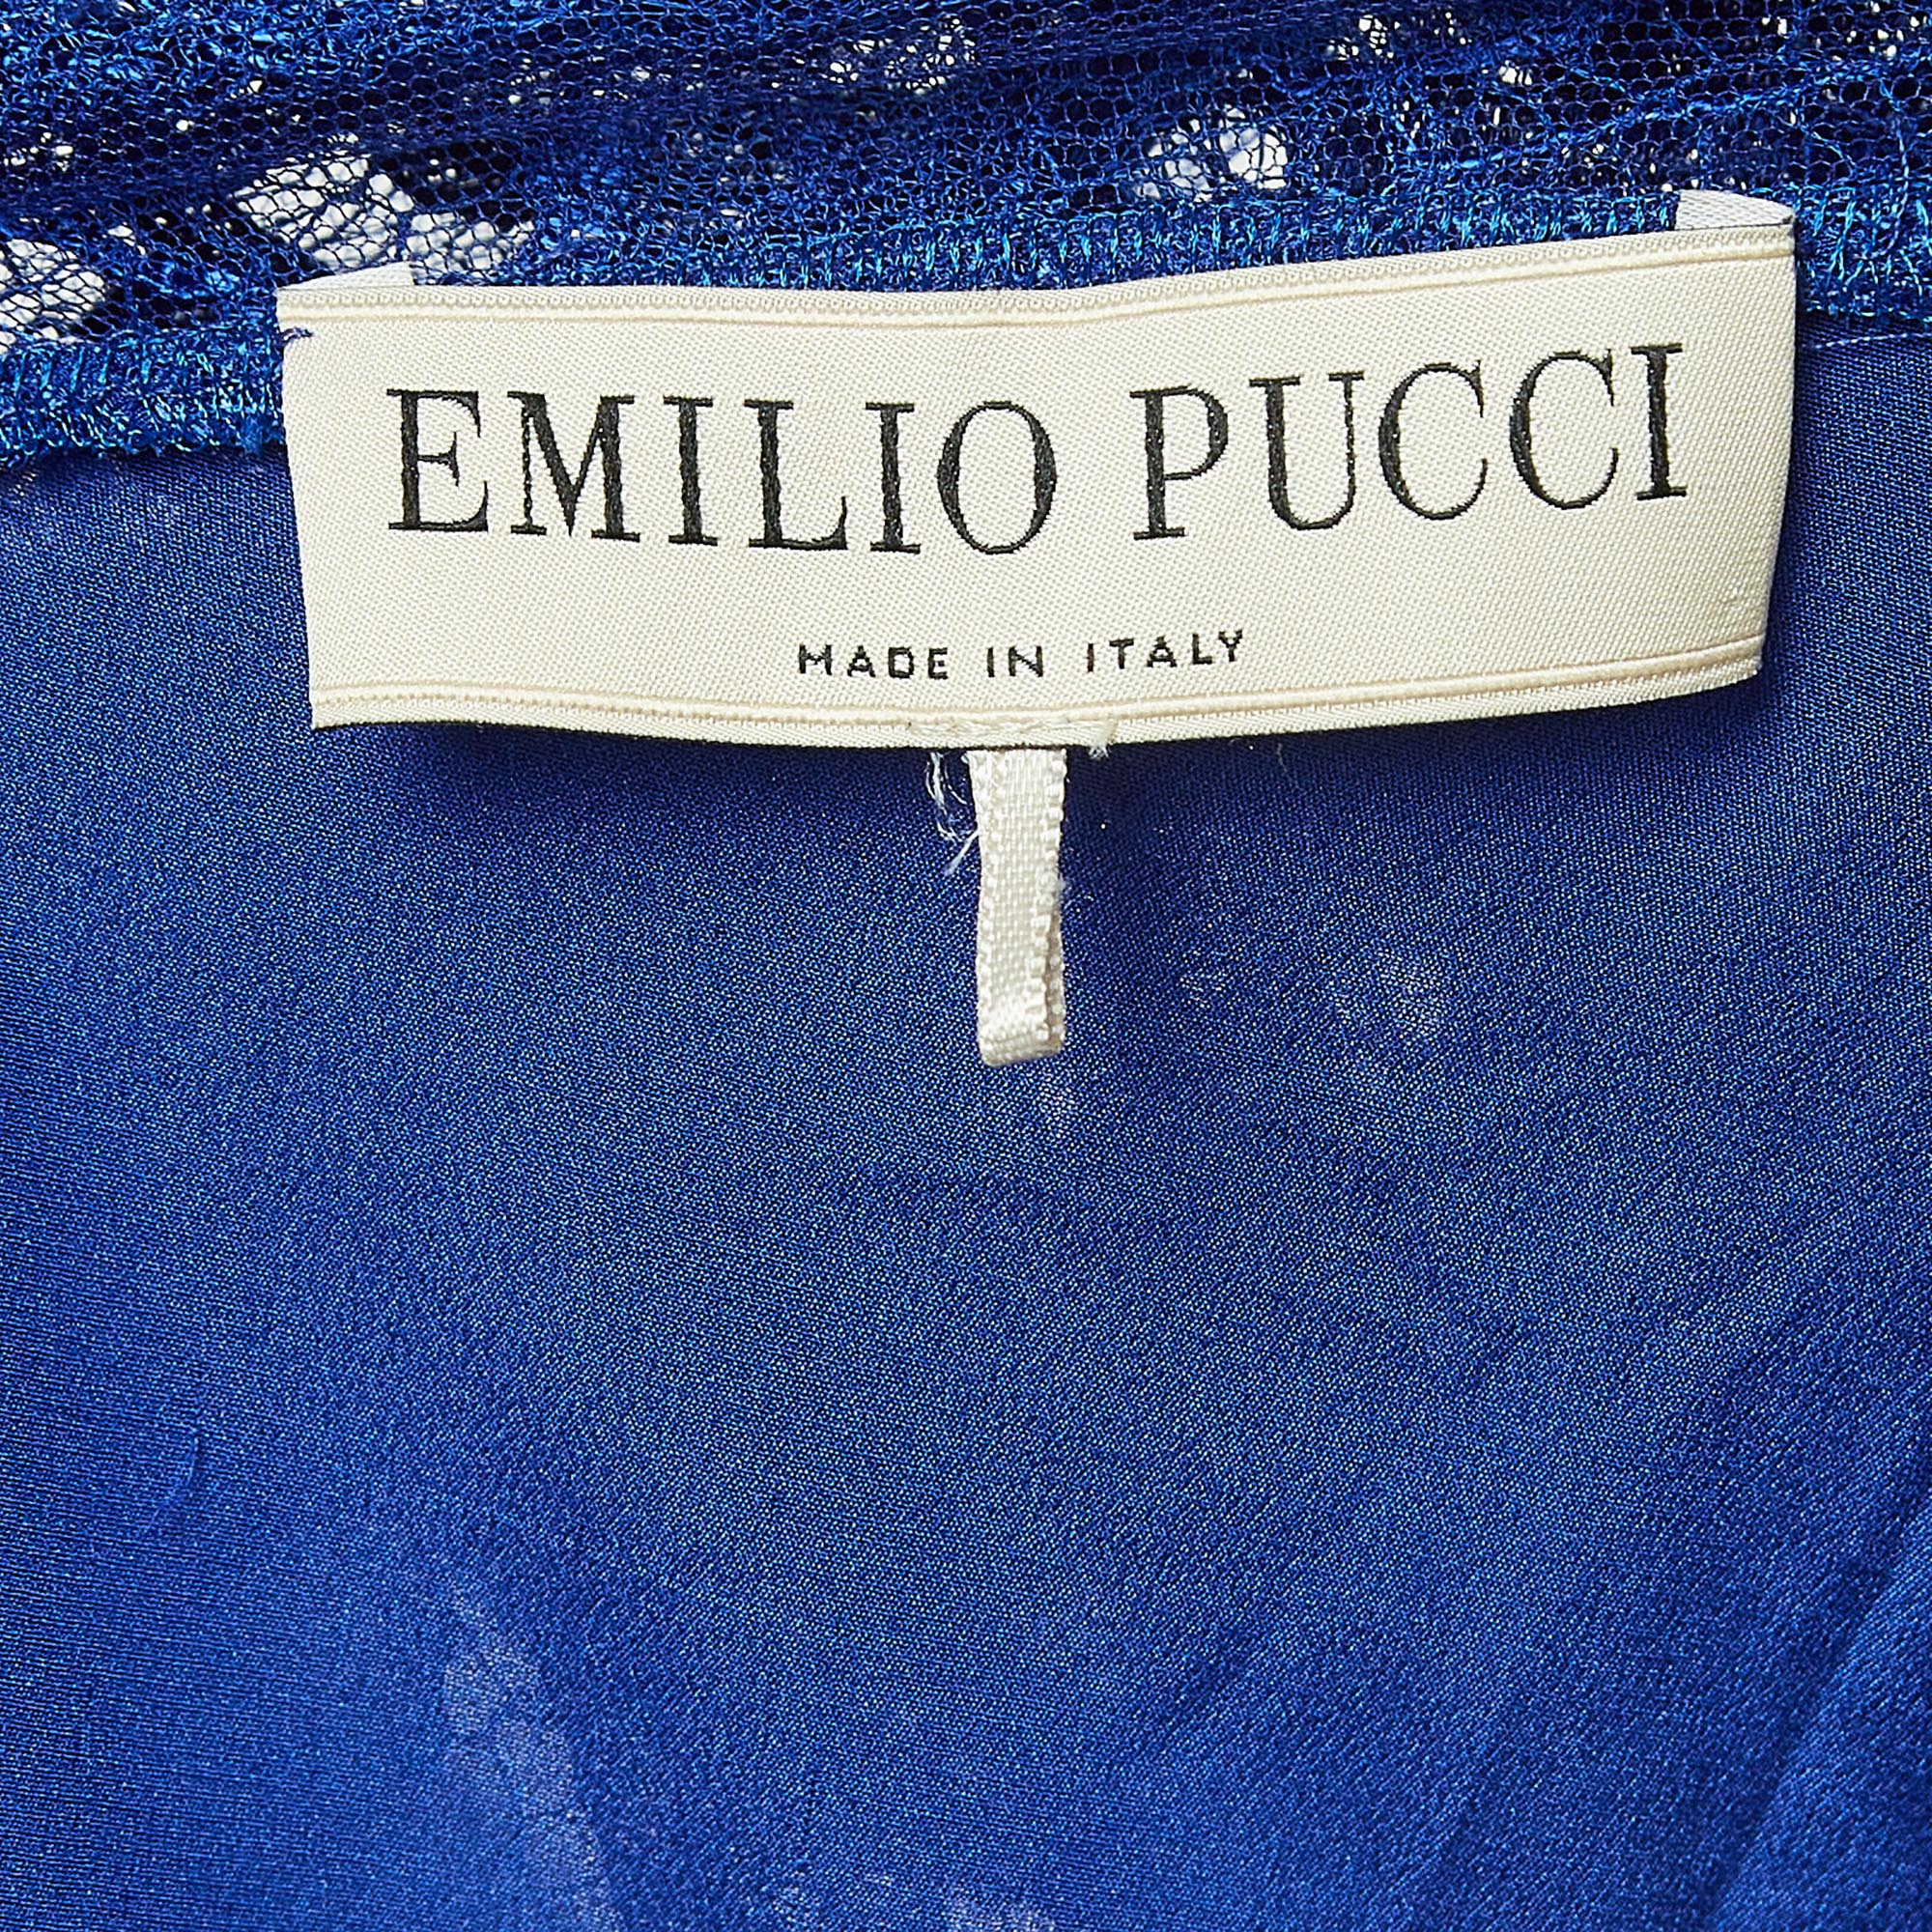 Emilio Pucci Blue Floral Lace Long Sleeve Mini Dress M